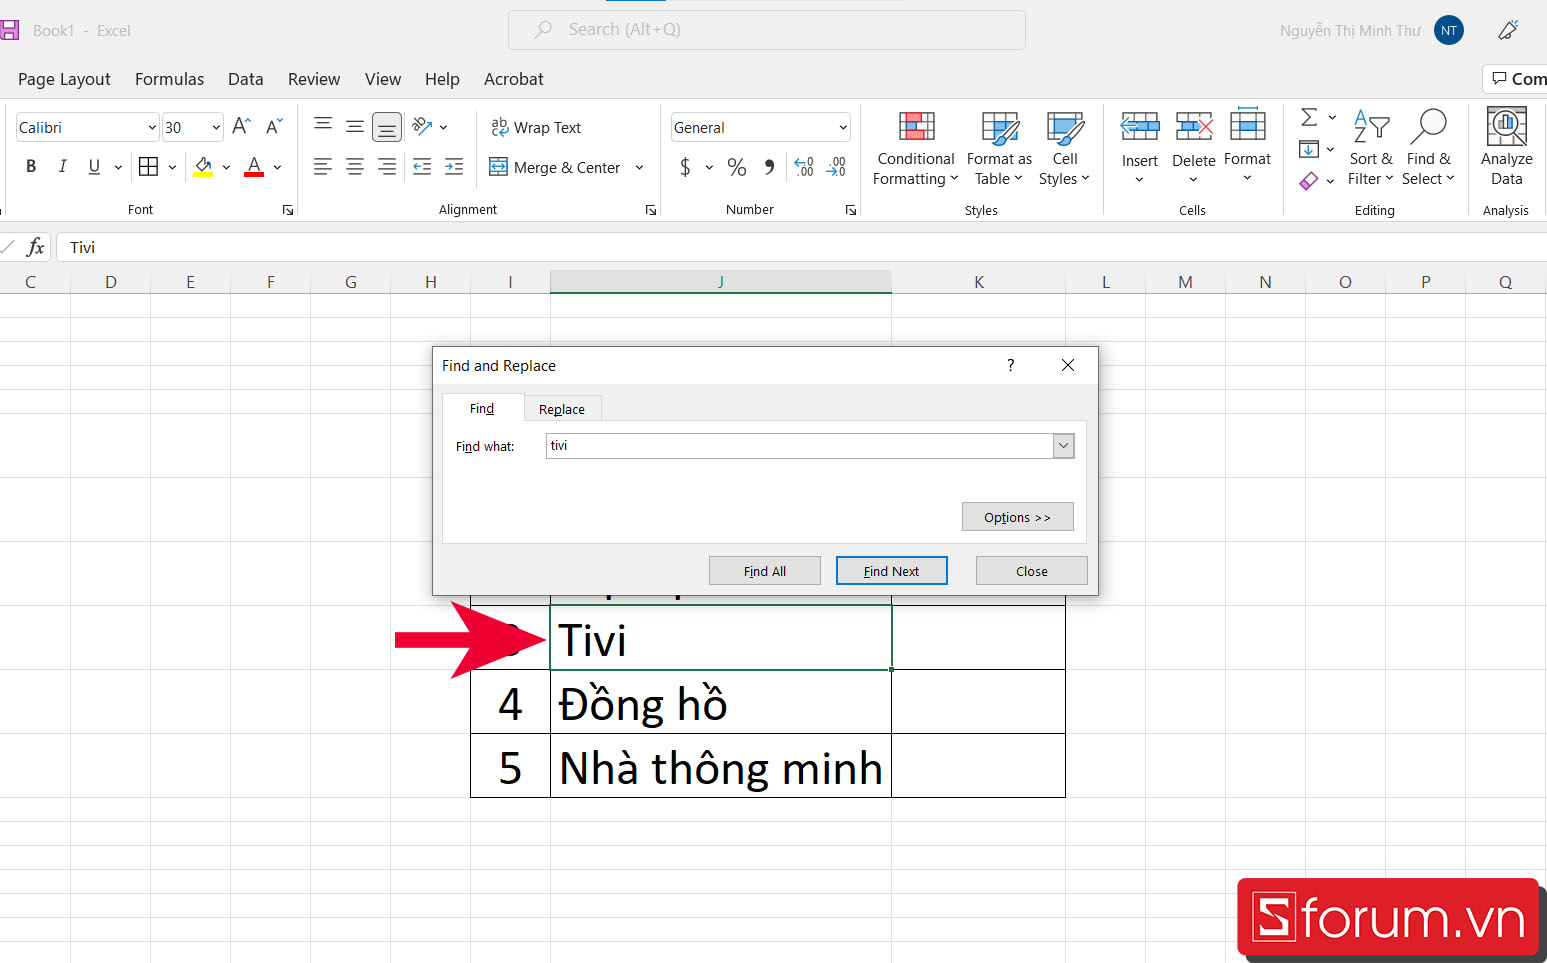 Cách tìm kiếm nhanh trong Excel bằng Find - bước 3